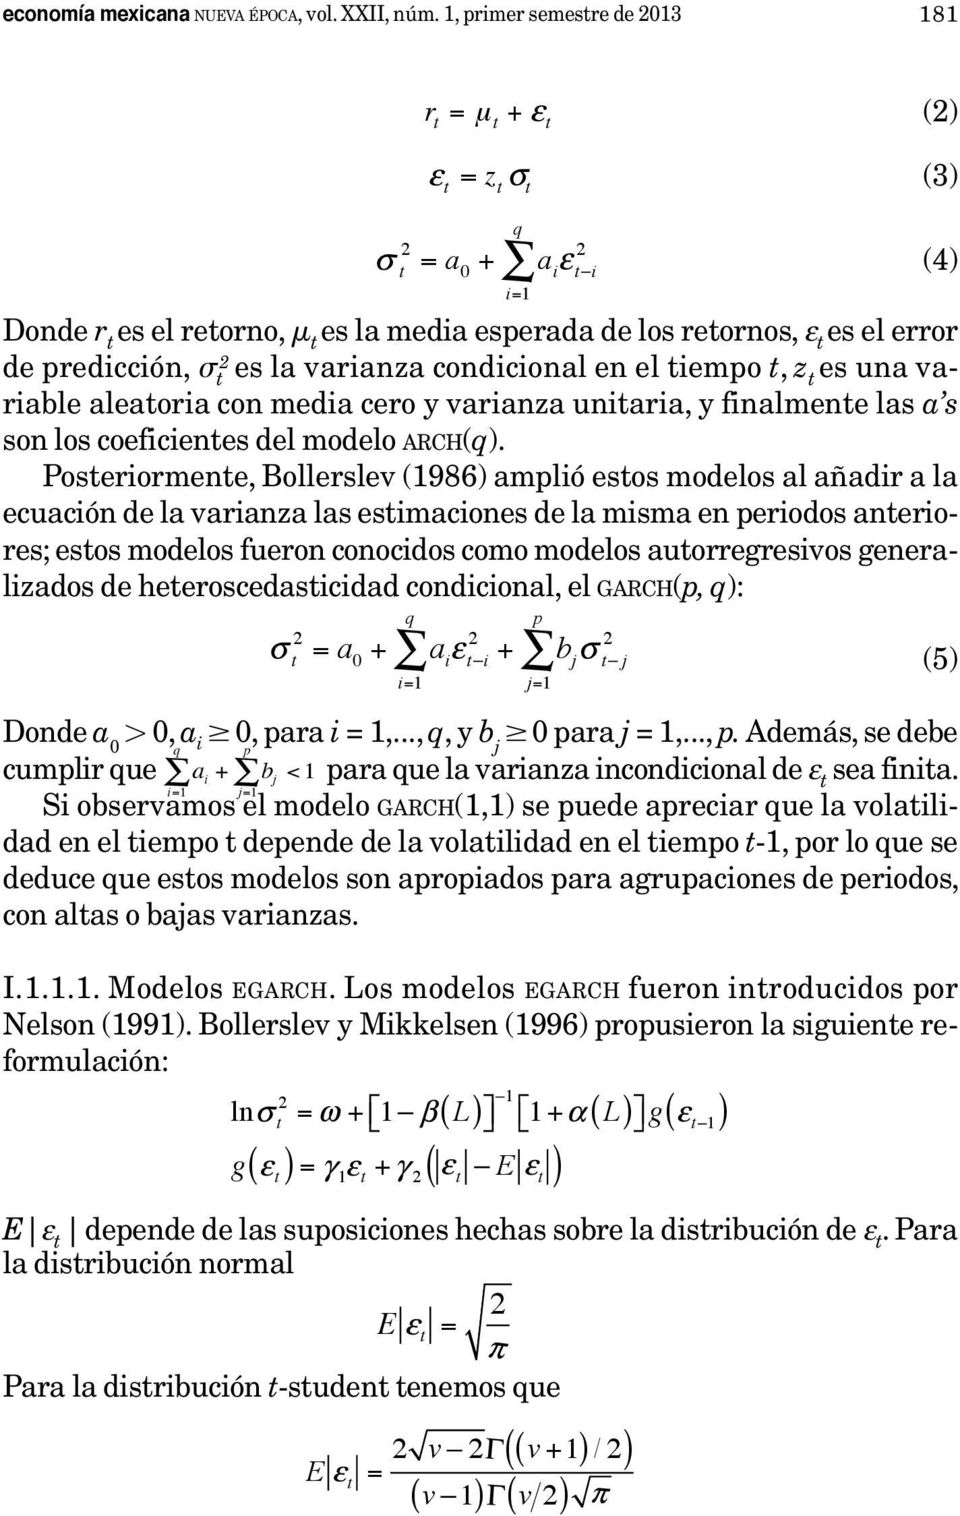 una variable aleatoria con media cero y varianza unitaria, y finalmente las a s son los coeficientes del modelo arch(q).